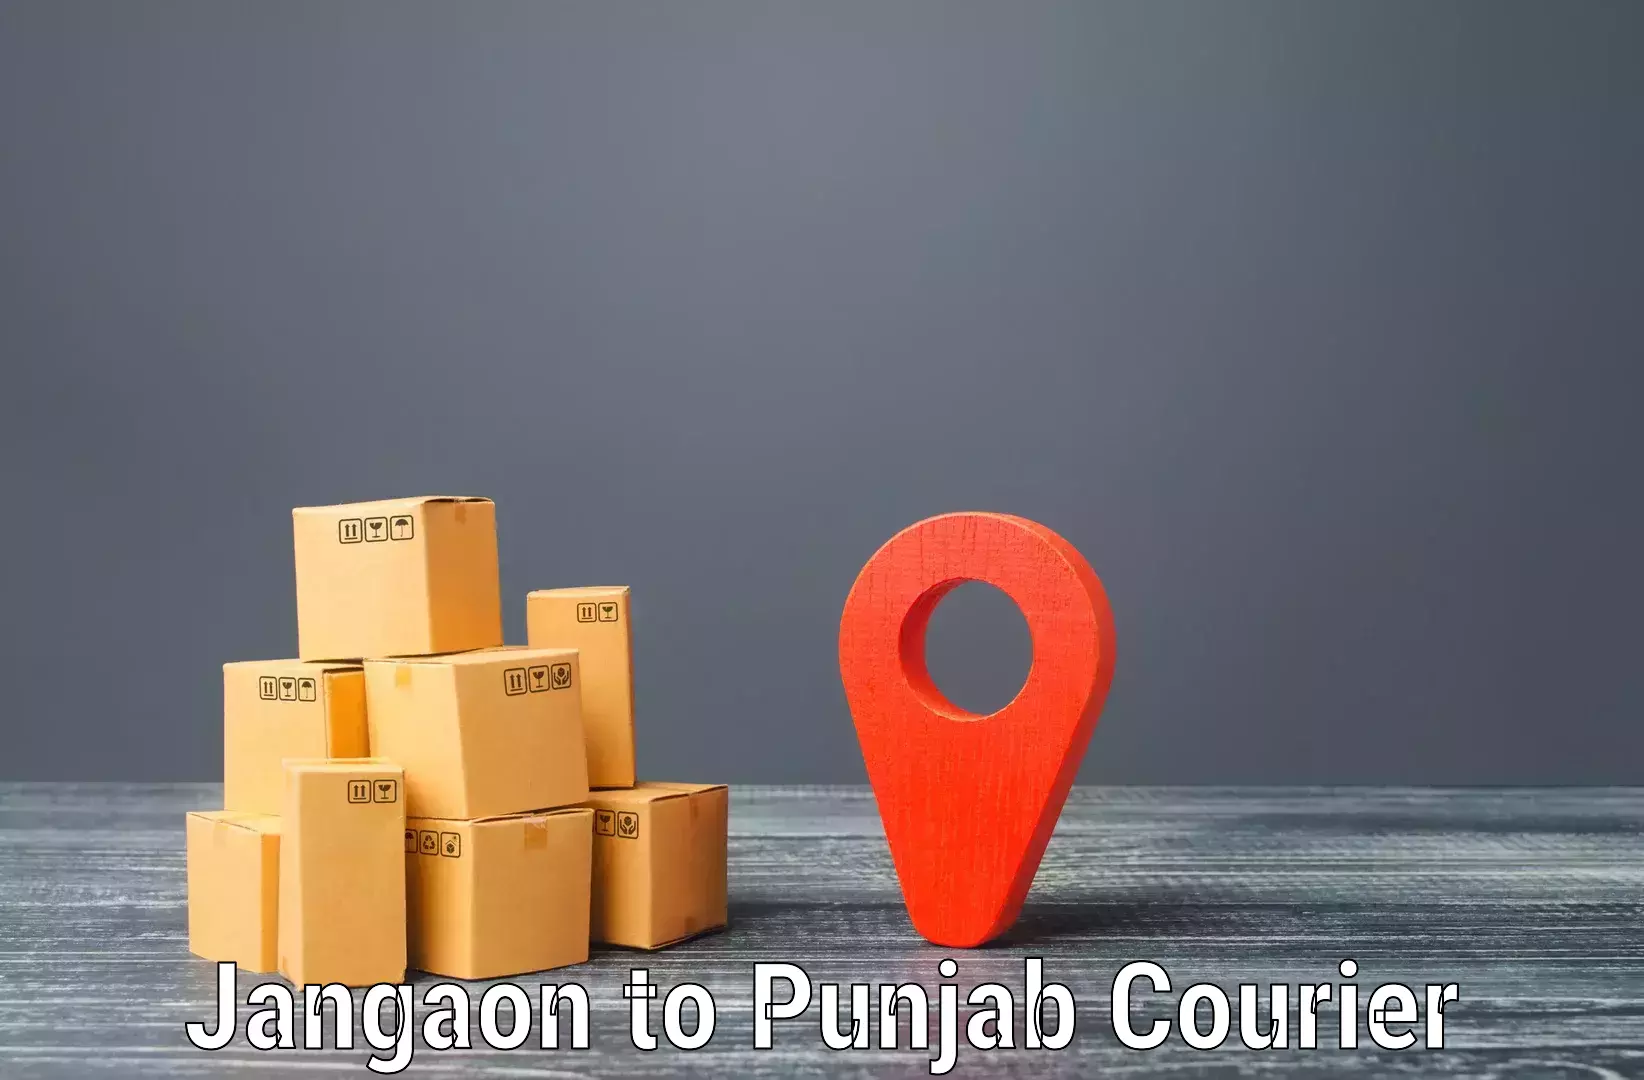 High-capacity parcel service Jangaon to Anandpur Sahib